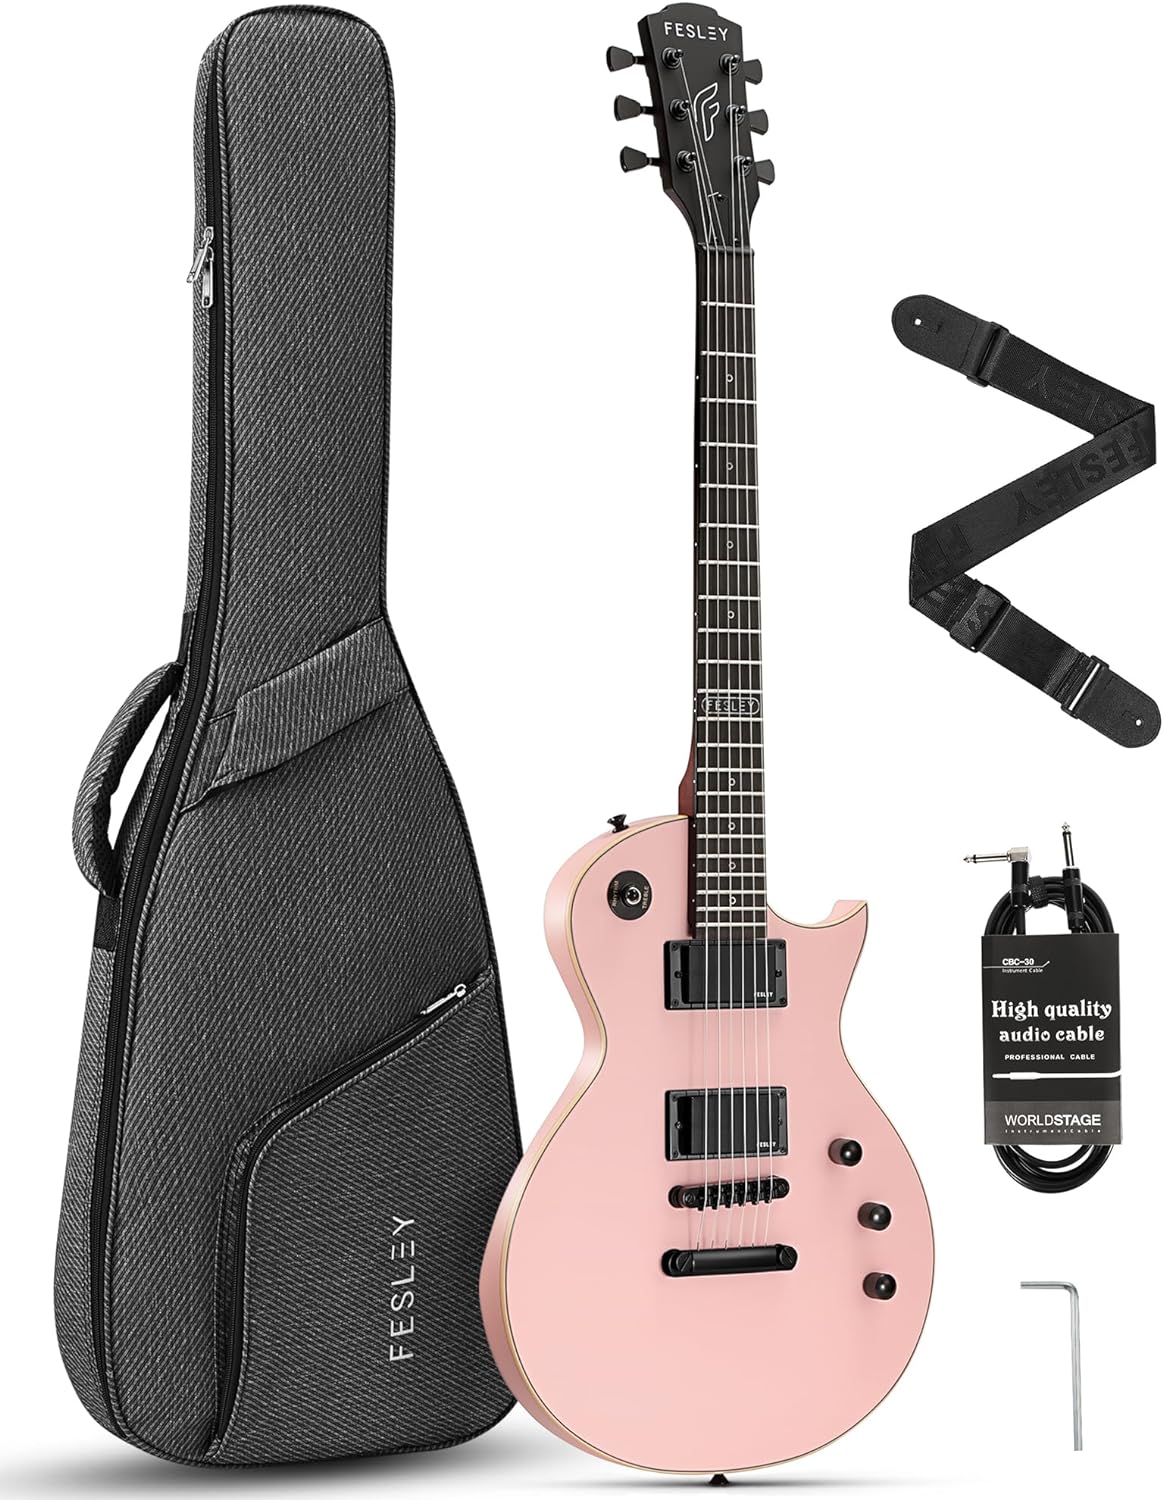 Fesley FLP350 39" Electric Guitar